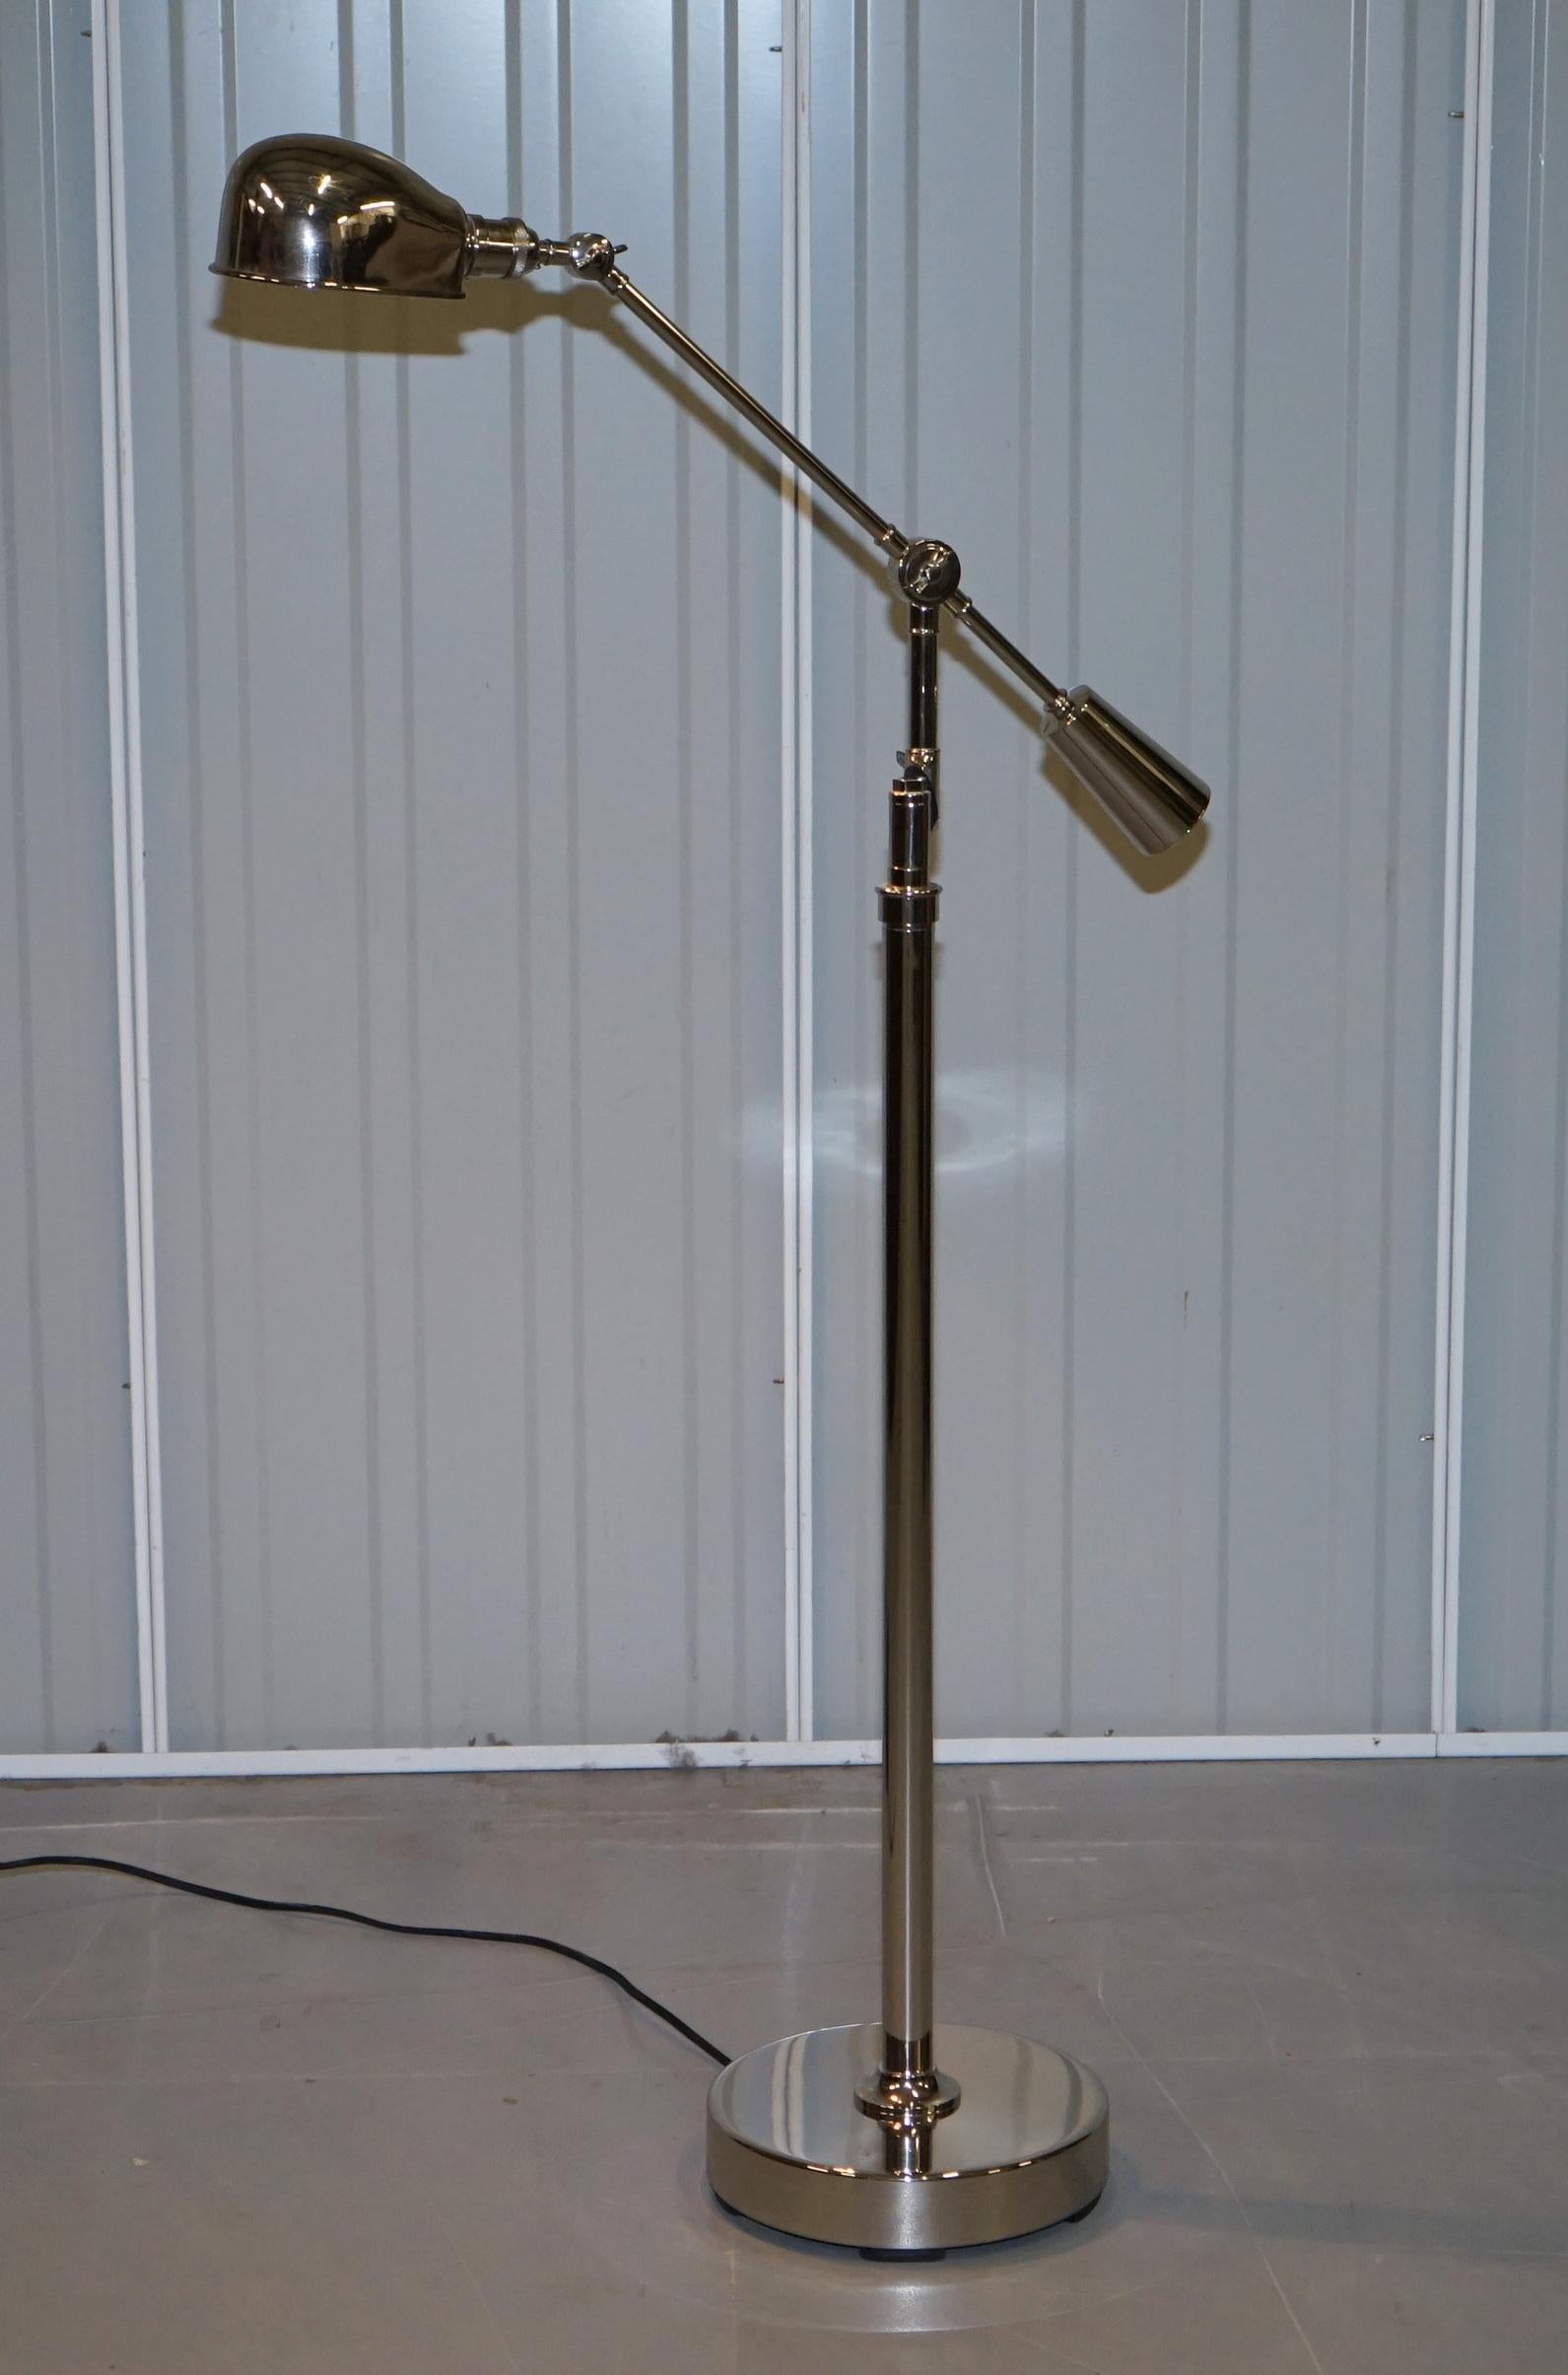 Ralph Lauren Boom Arm RL 67 Est Chrome Floor Standing Height Adjustable Lamp 4